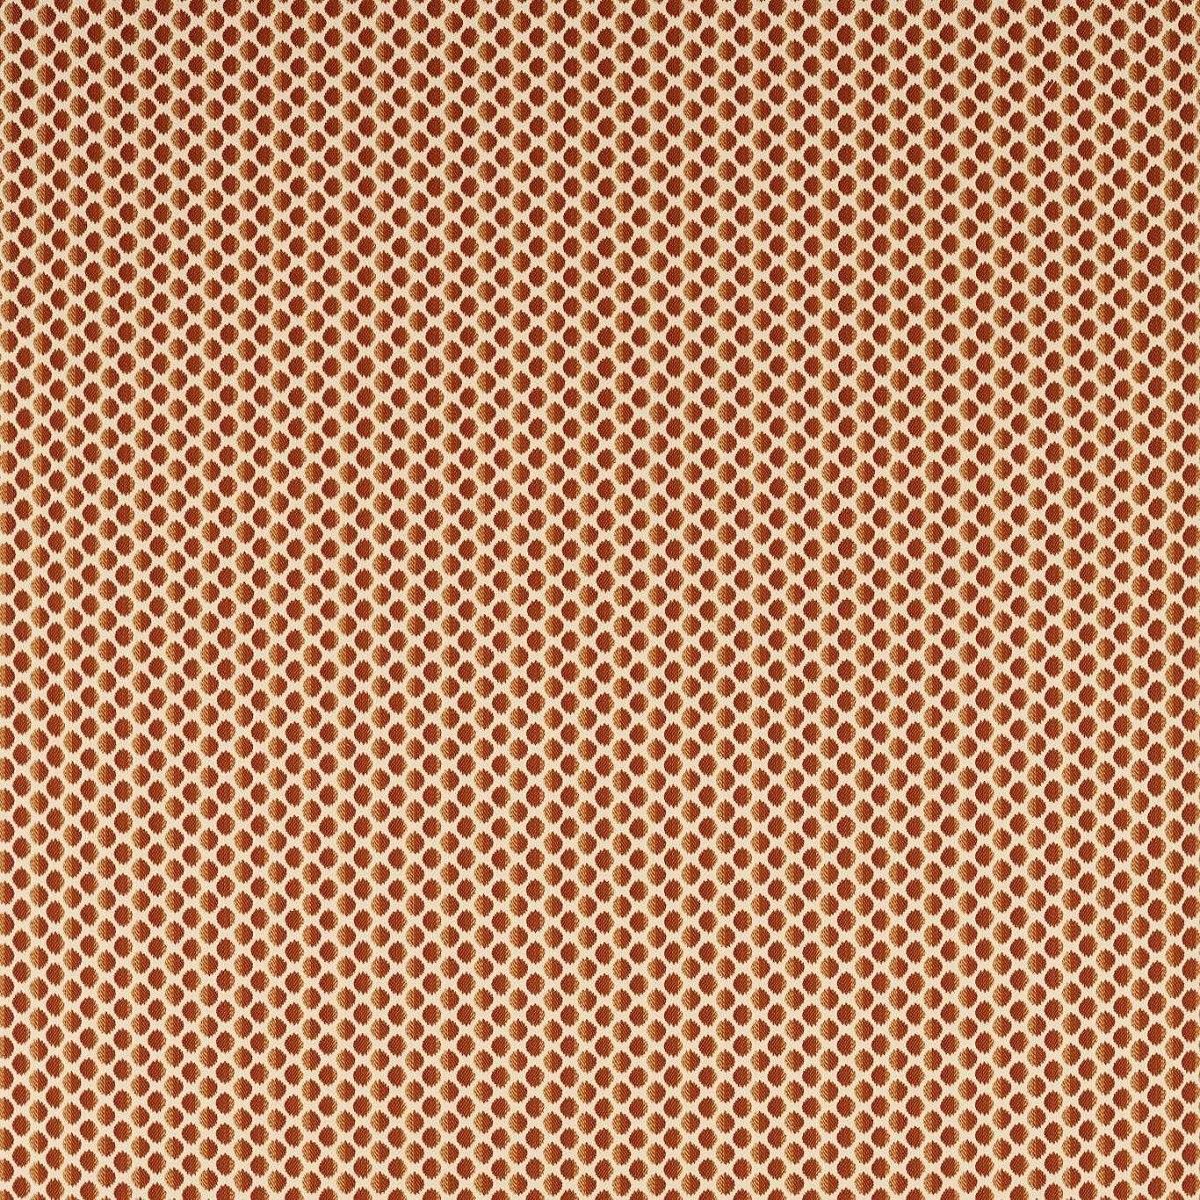 Seymour Spot Amber Fabric by Zoffany